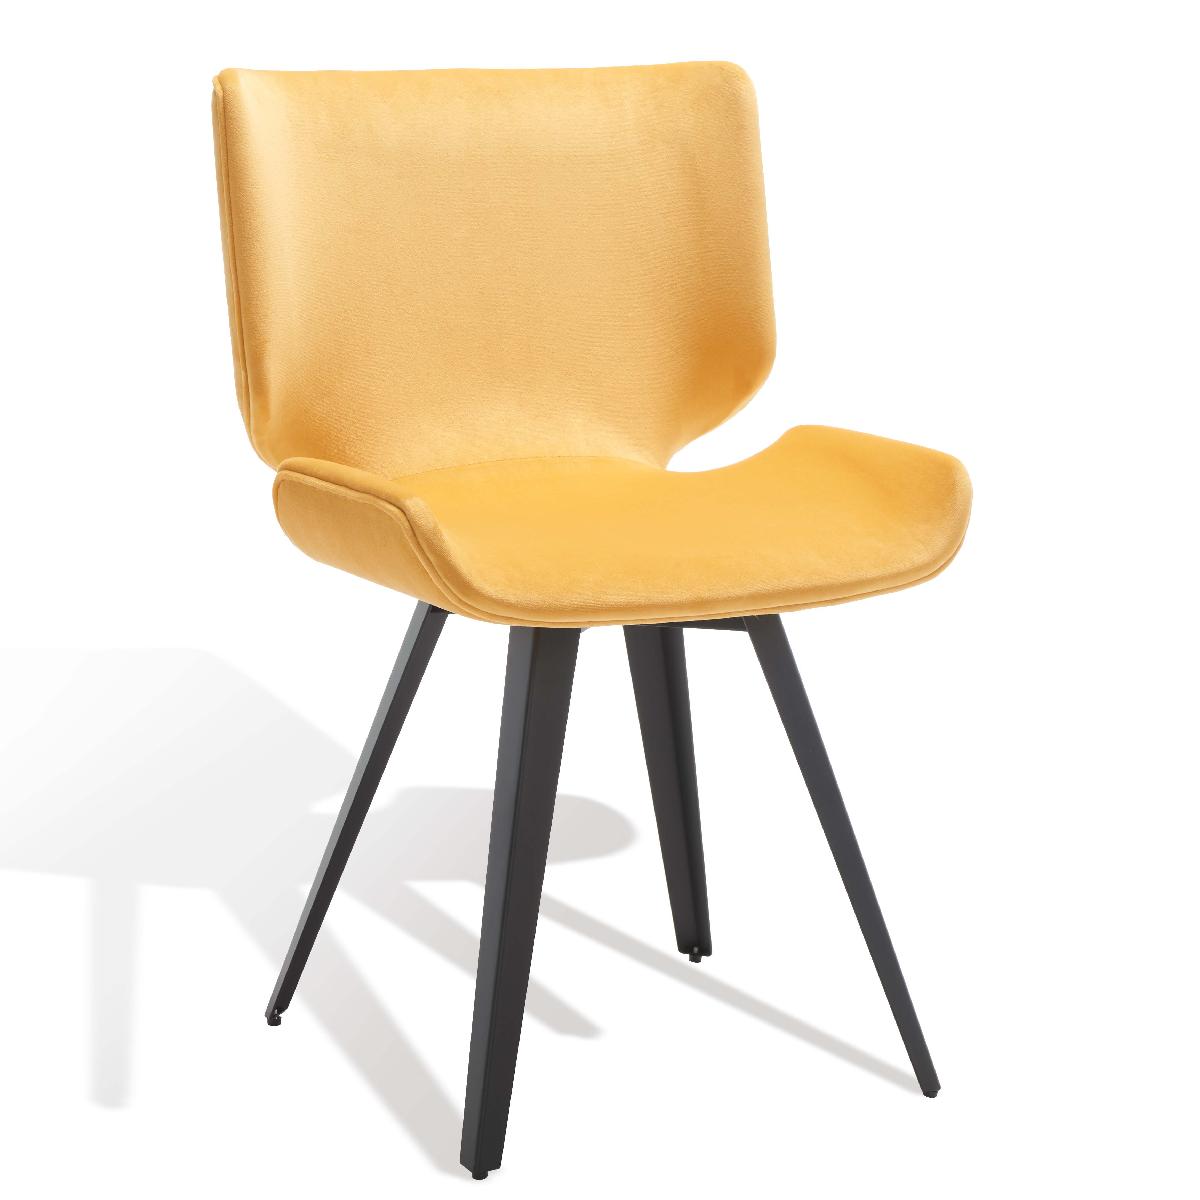 Safavieh Couture Matty Scandinavian Dining Chair - Mustard